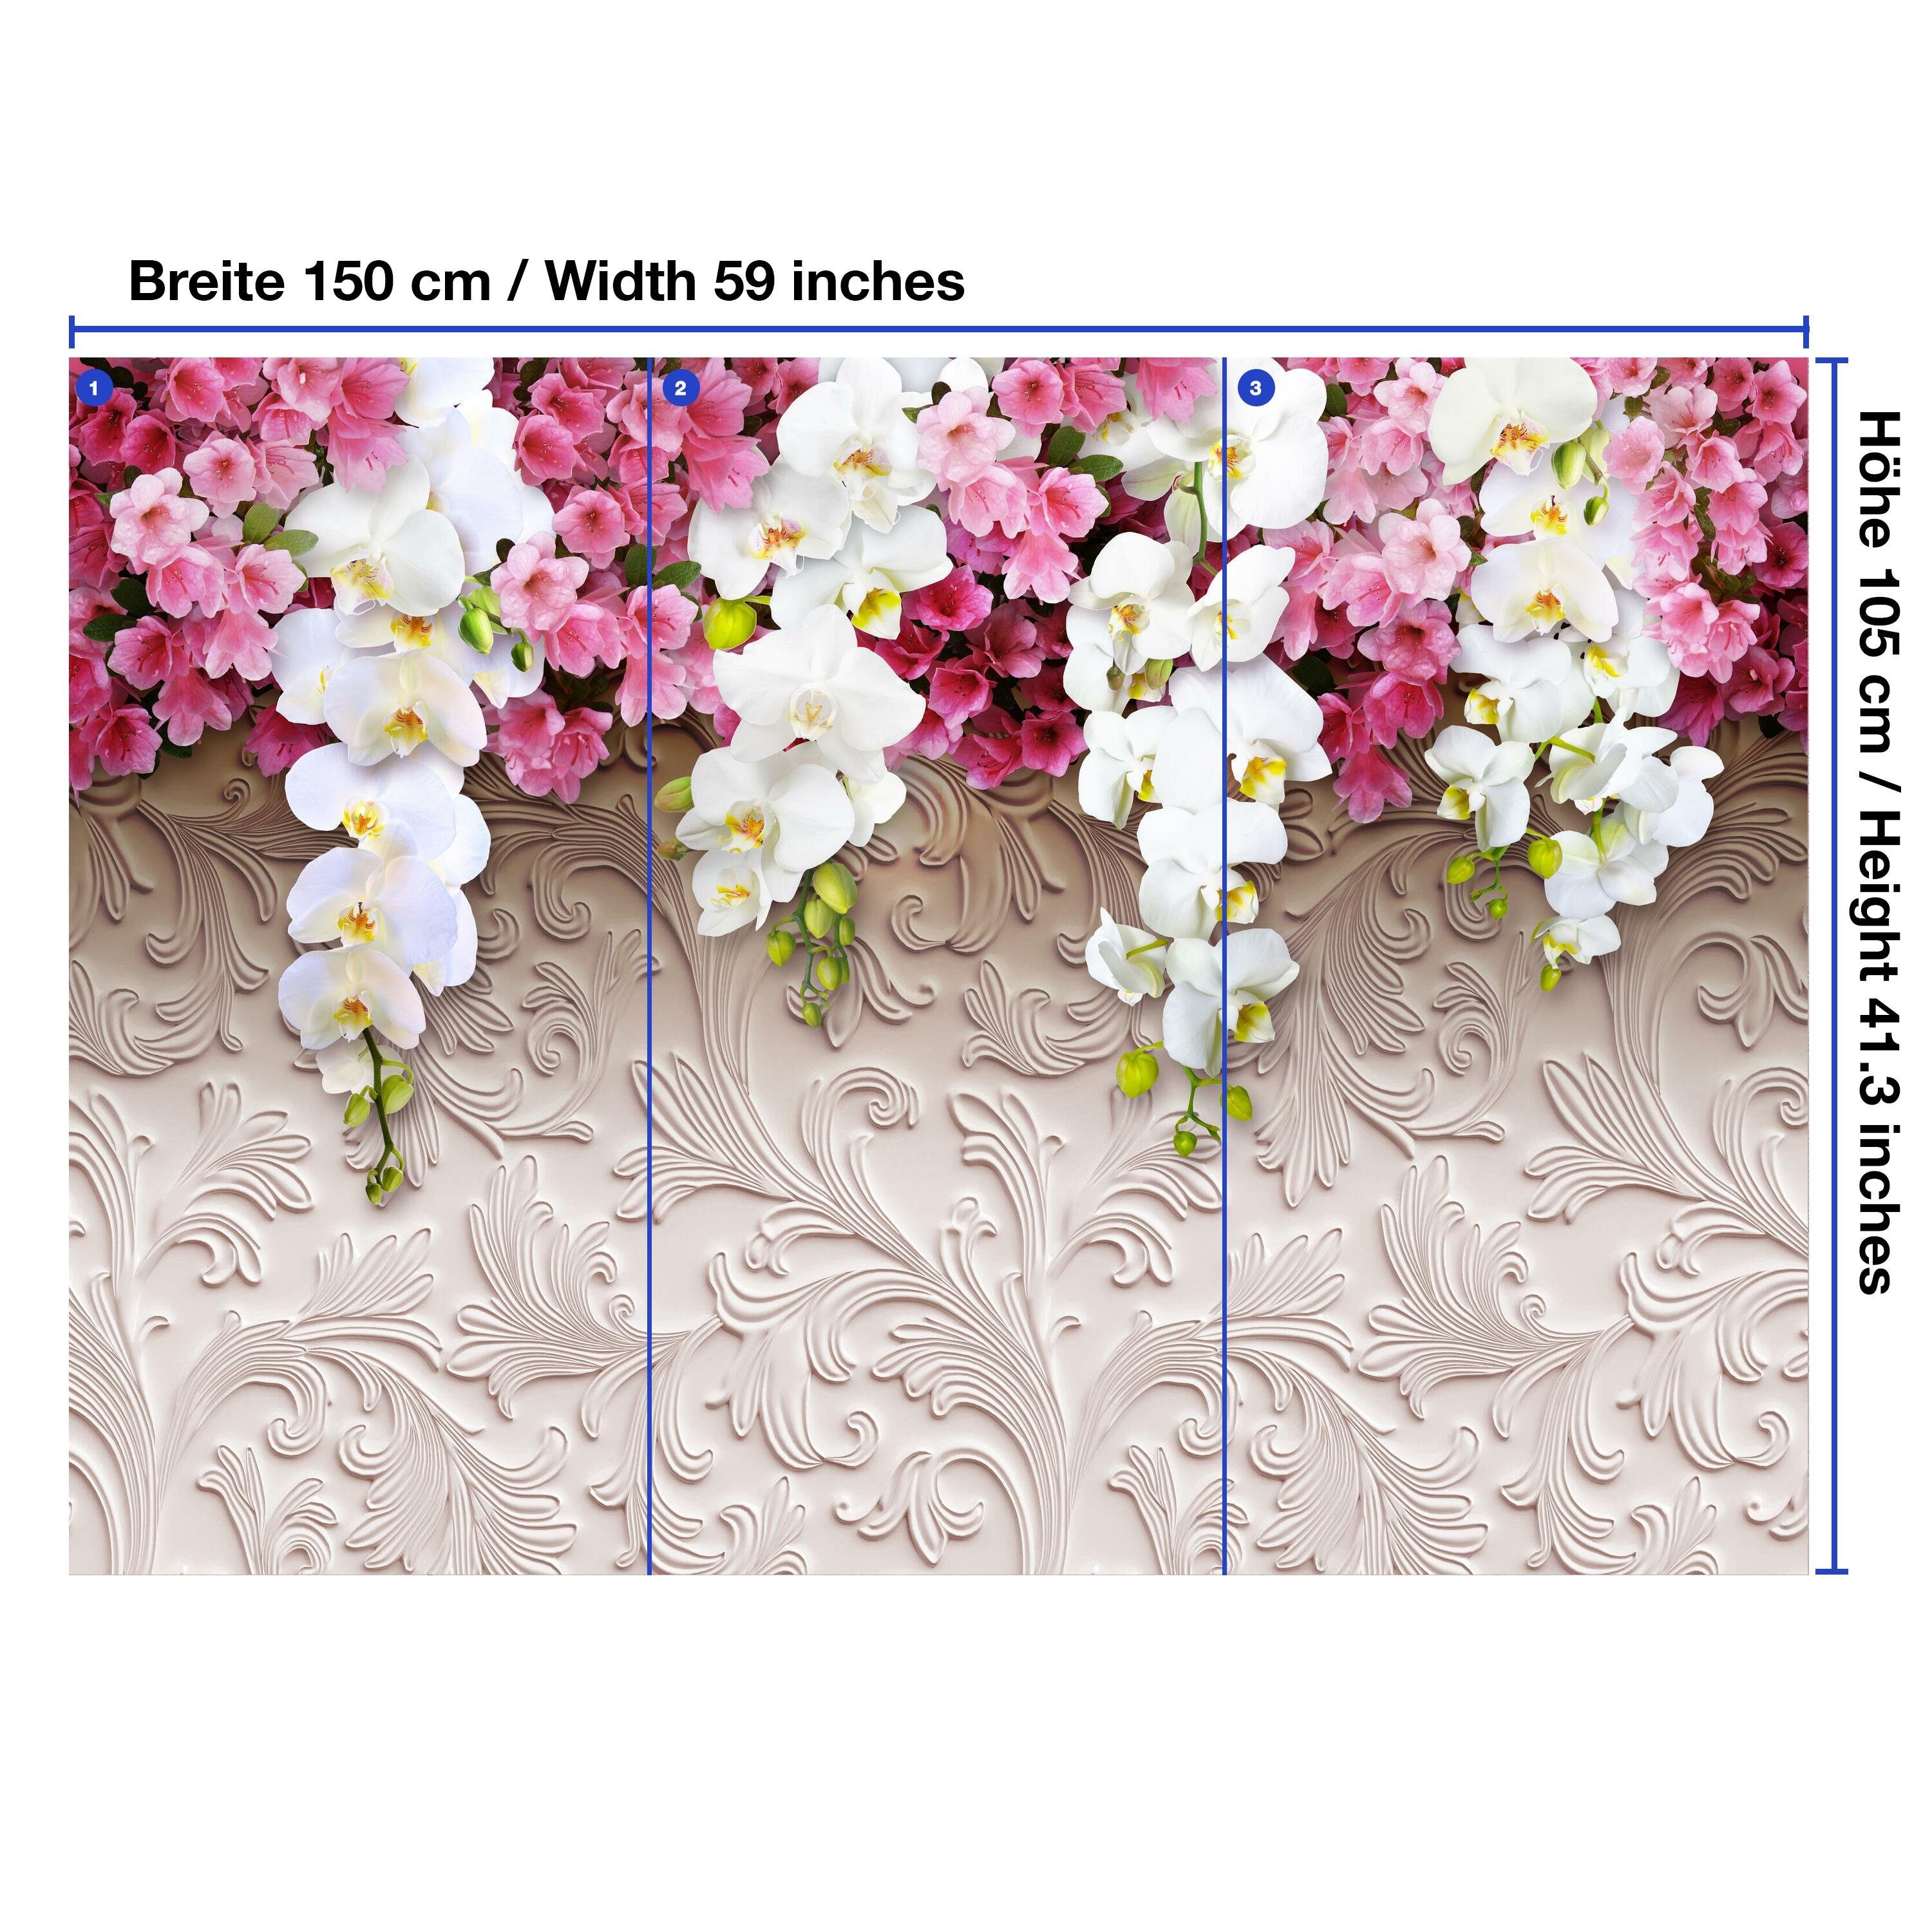 wandmotiv24 Fototapete 3D Blumen Muster Motivtapete, Wandtapete, matt, Stuck Relief, Vliestapete Orchideen glatt